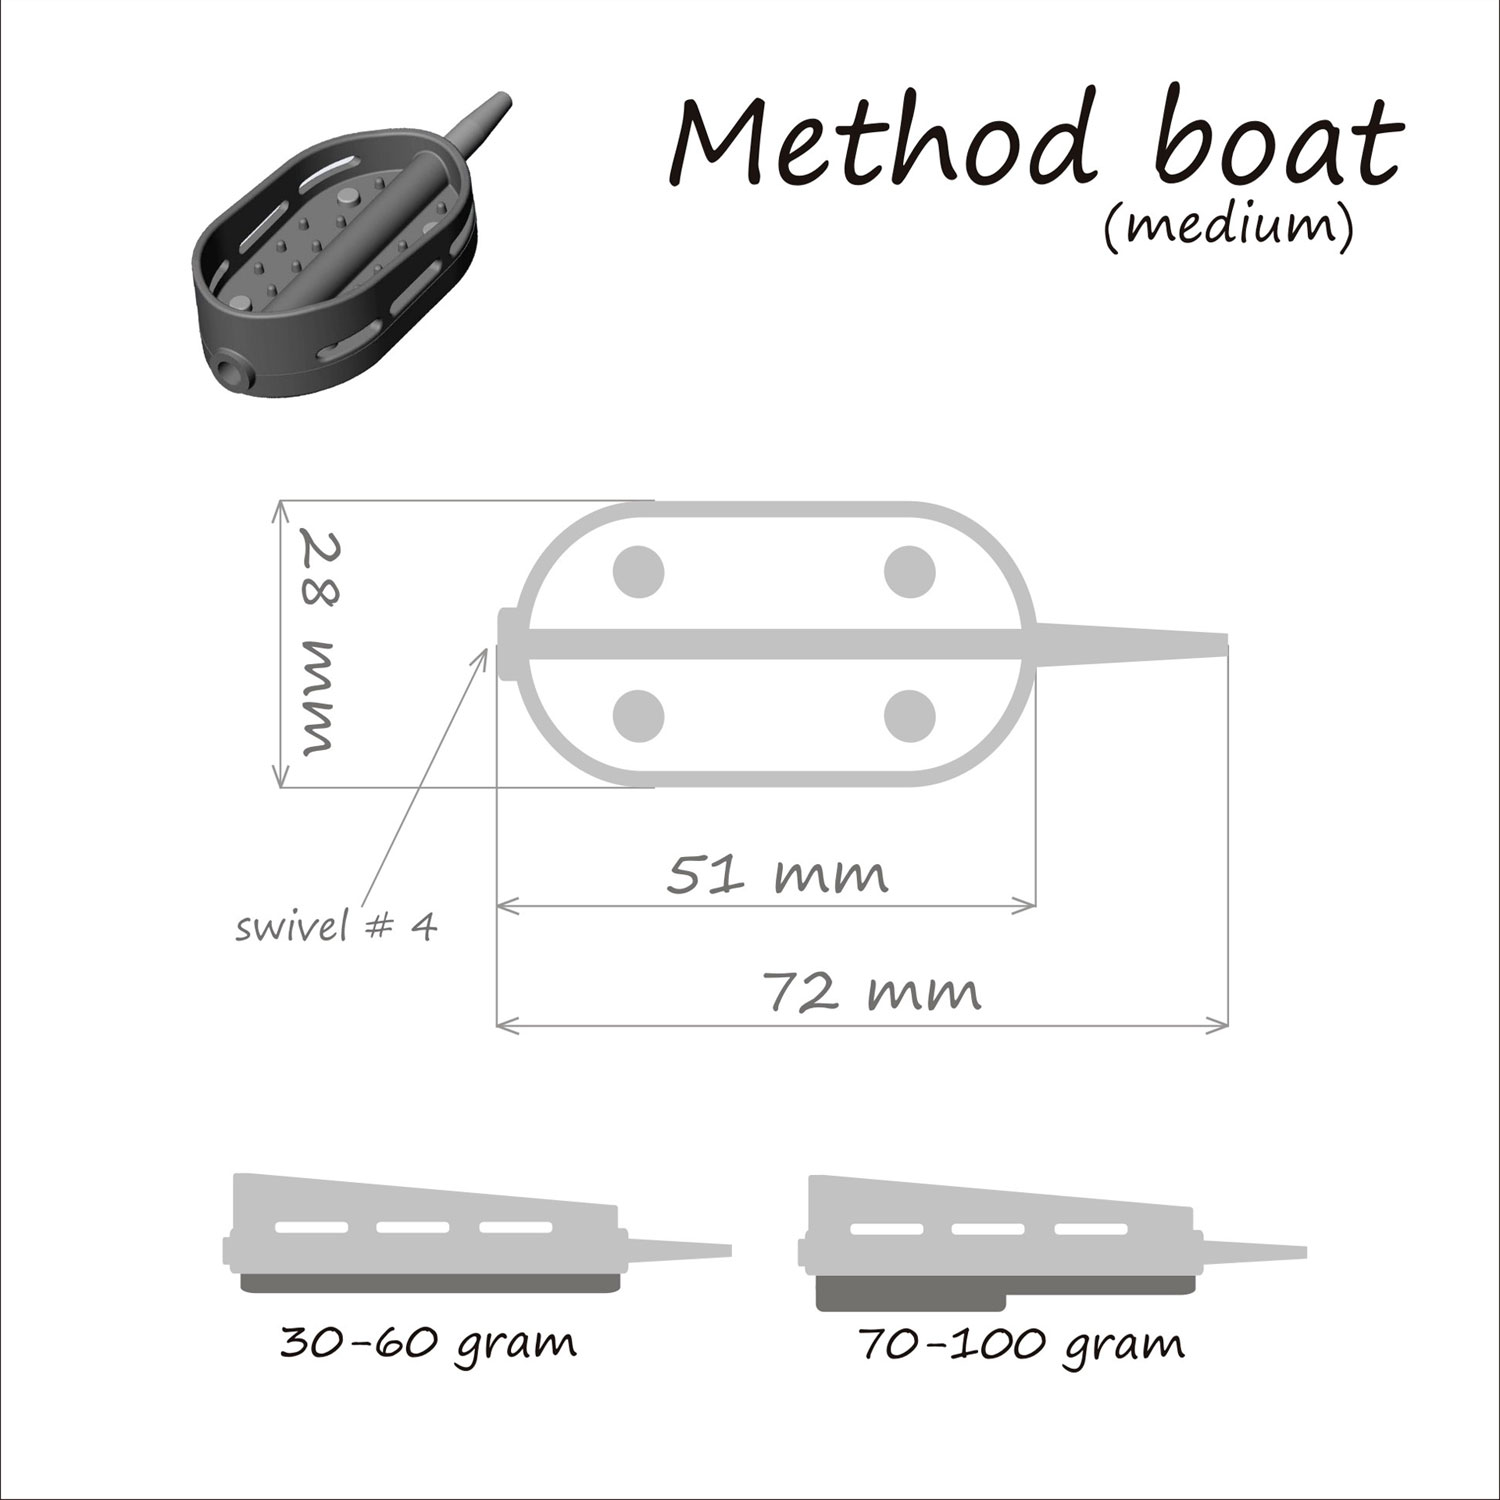 Кормушка ORANGE Boat Flat Method, 90 гр, в тех. уп. 10 шт